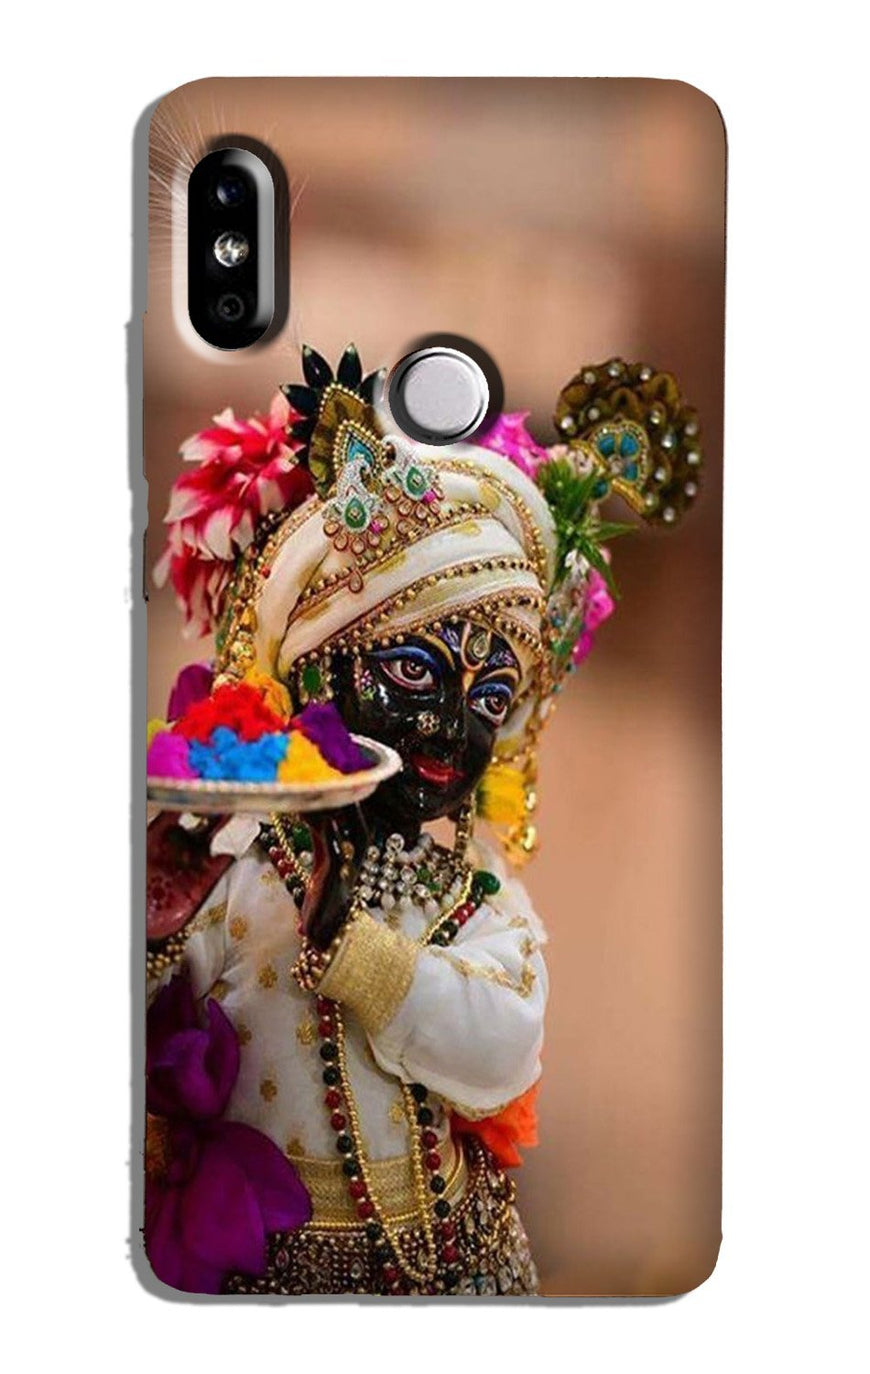 Lord Krishna2 Case for Xiaomi Redmi Note 7/Note 7 Pro